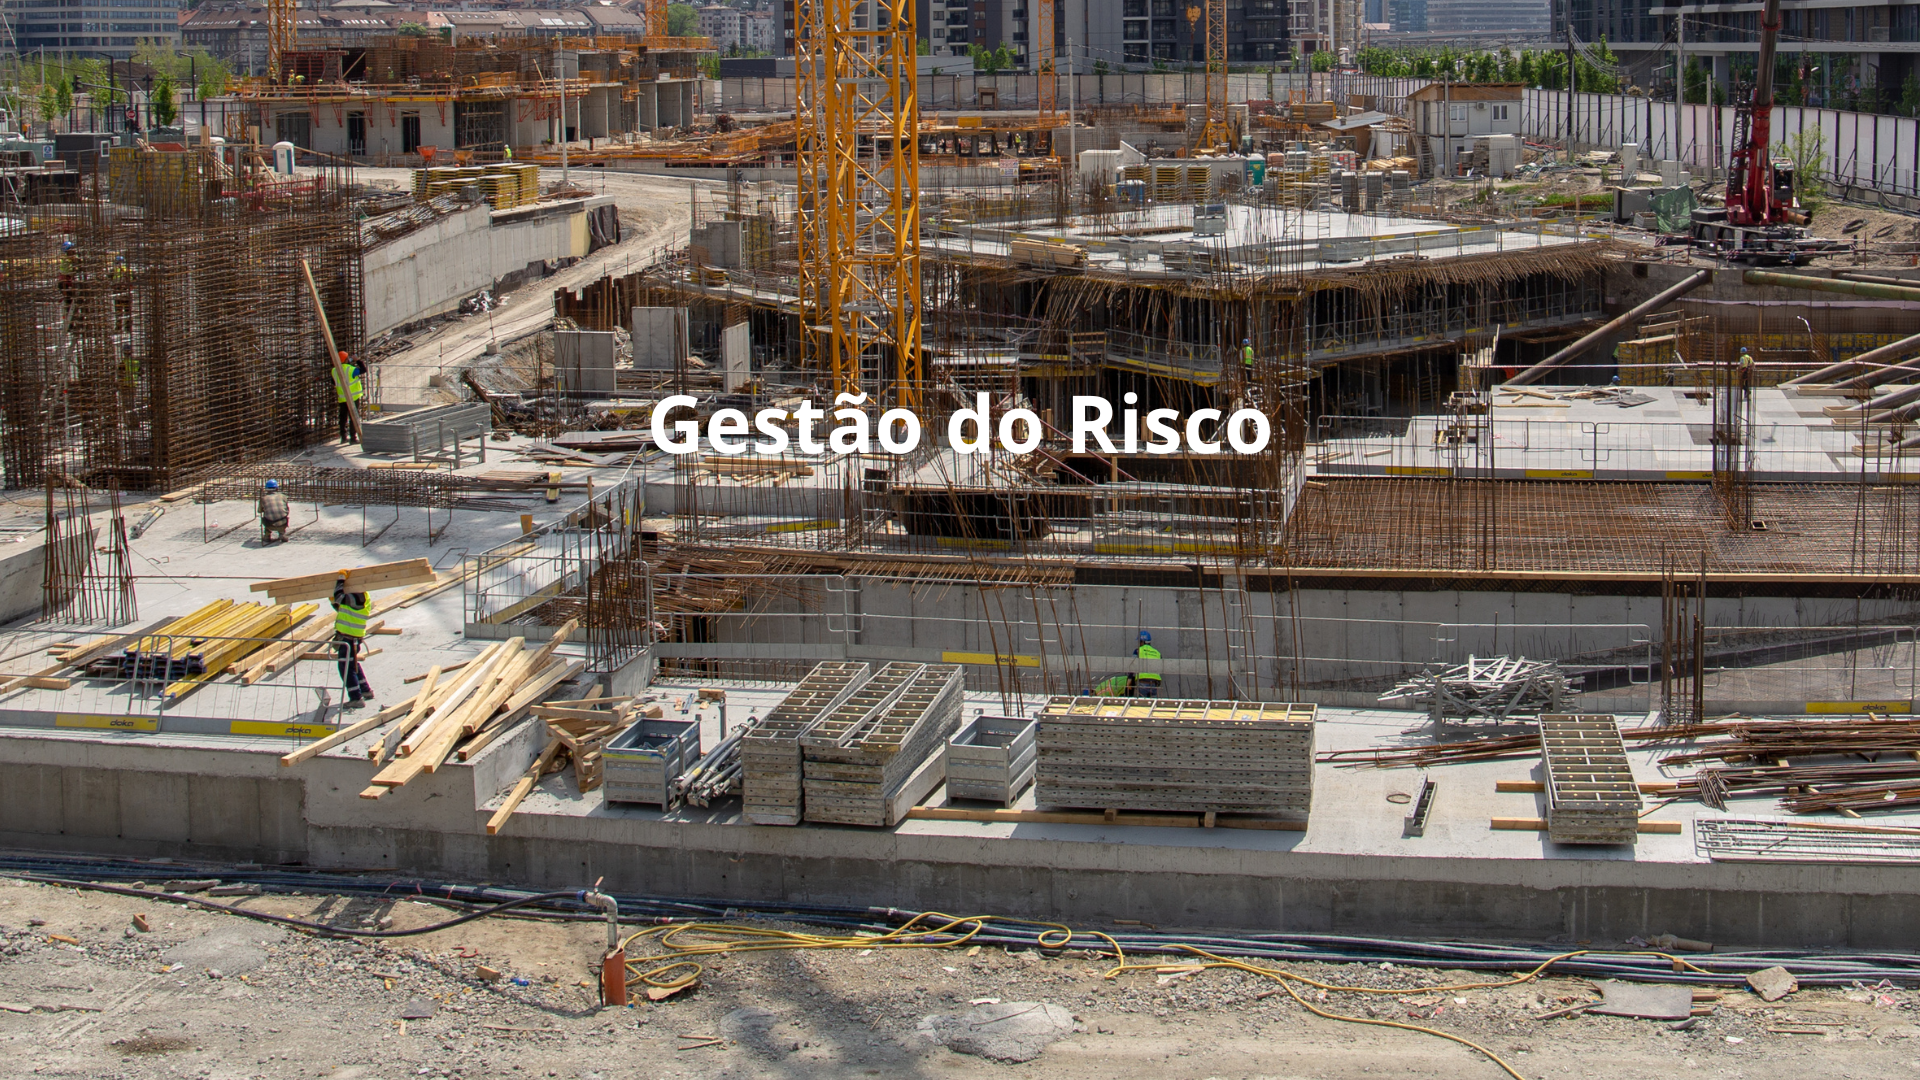 Gestao-do-Risco1